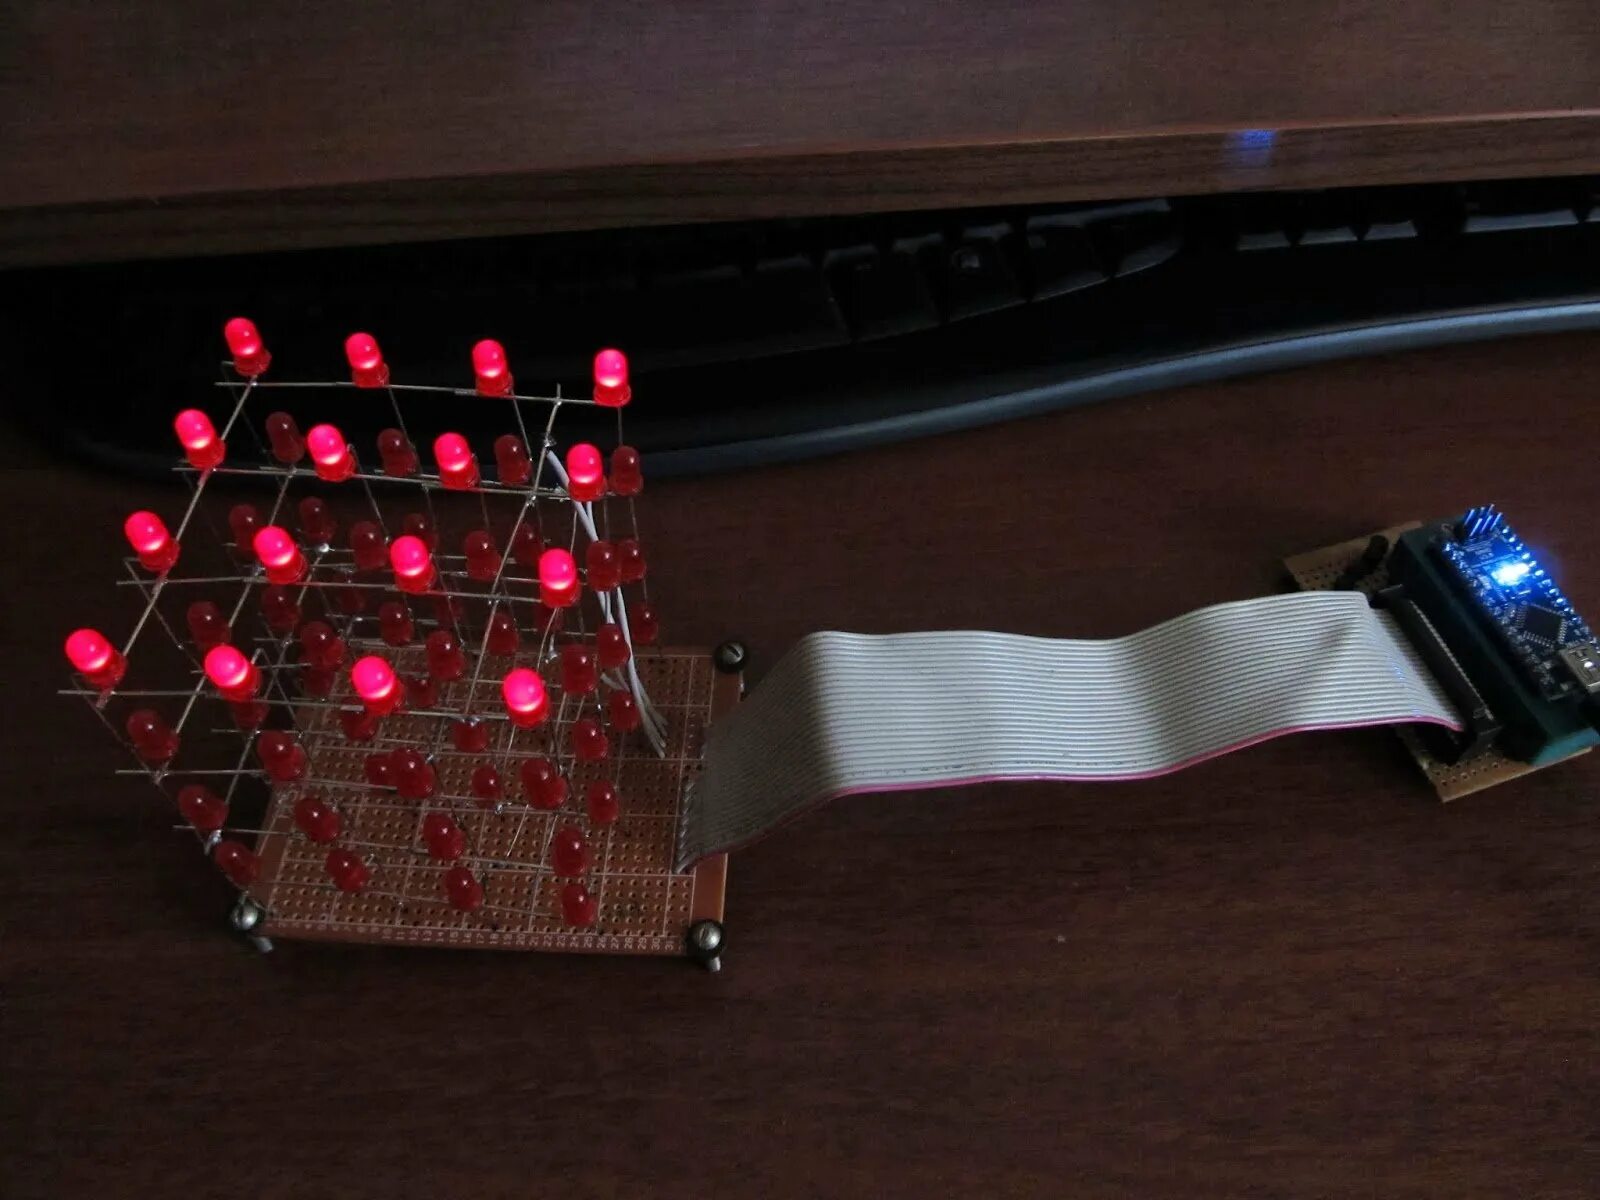 Диод своими руками. Arduino световой куб 3х3х3. Светодиодный куб на ардуино. Куб из светодиодов на ардуино. ,Tcrjytxysq re, BP ctnjlbjljd.